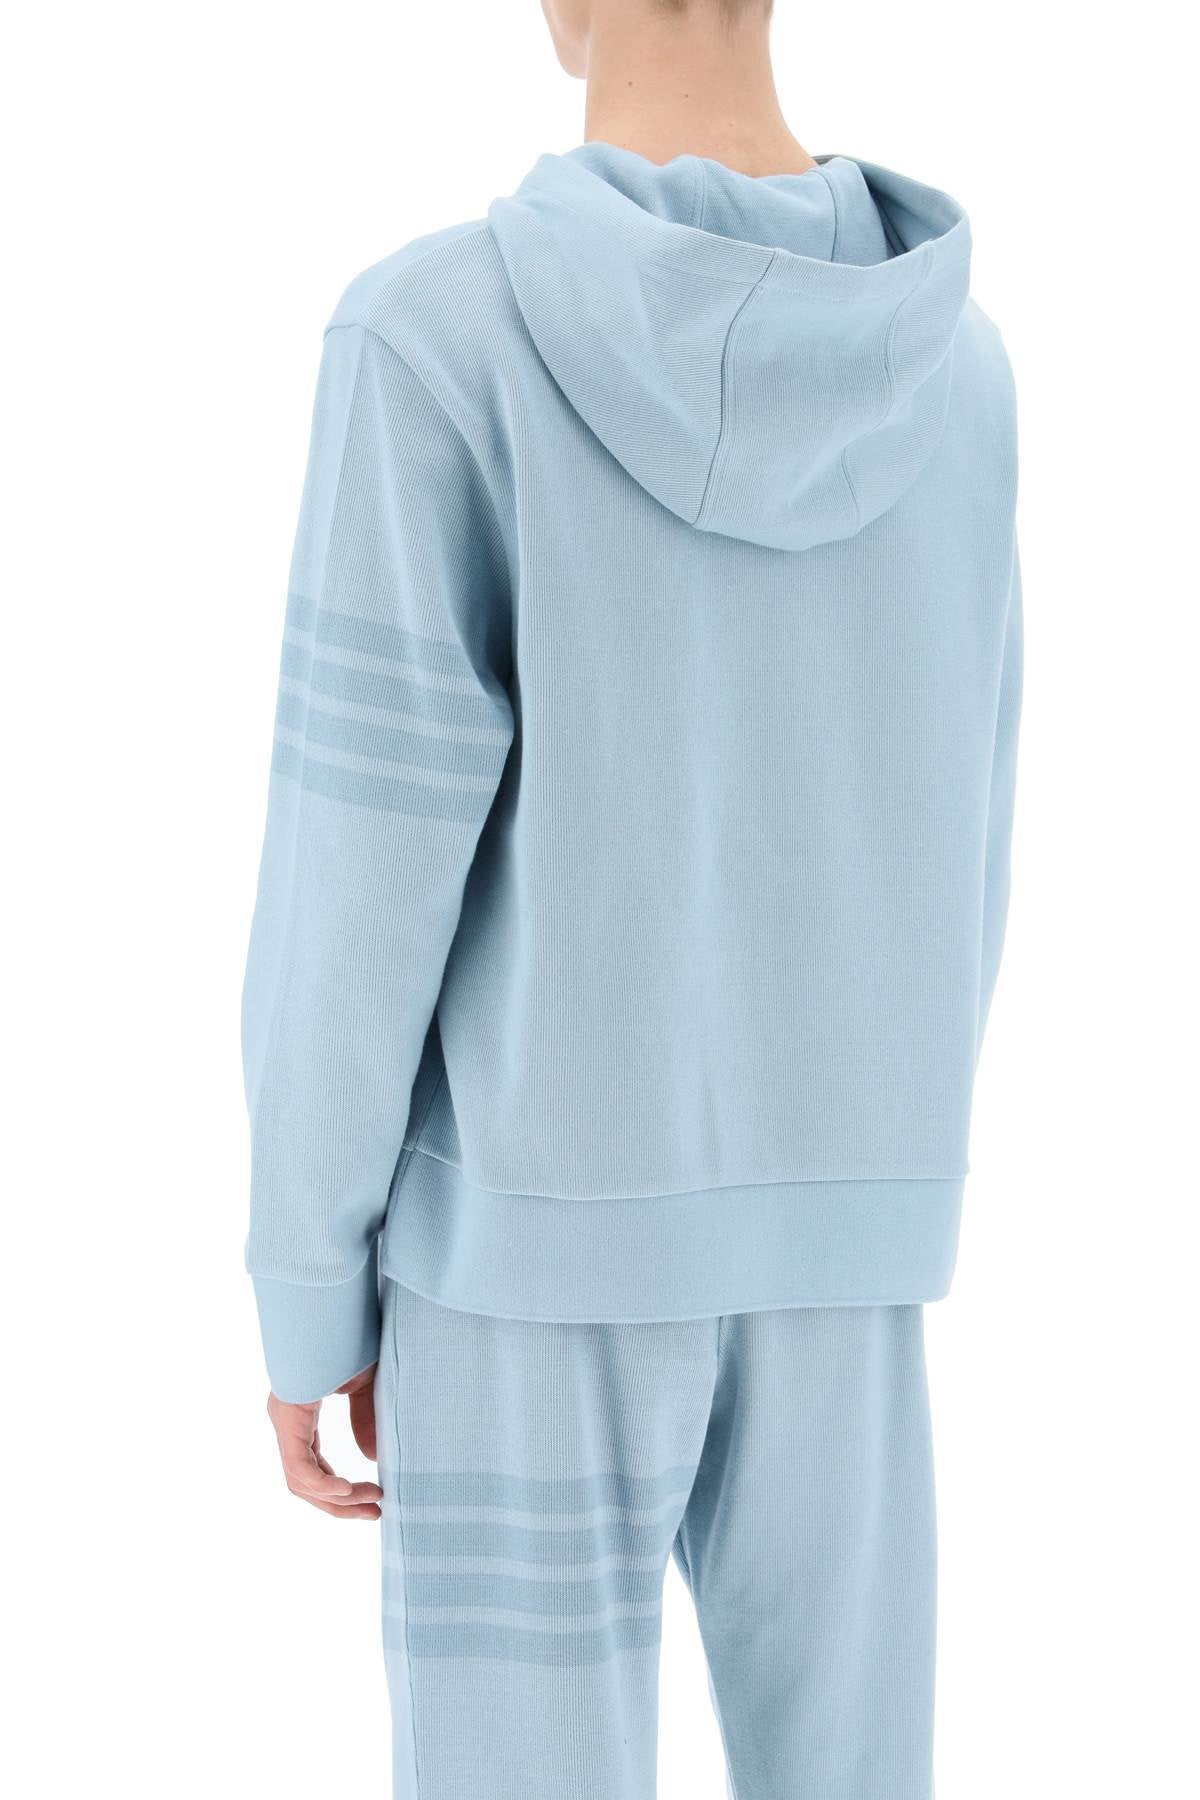 Áo Hoodie nam 100% cotton màu xanh nhạt với họa tiết 4-bar đồng tông